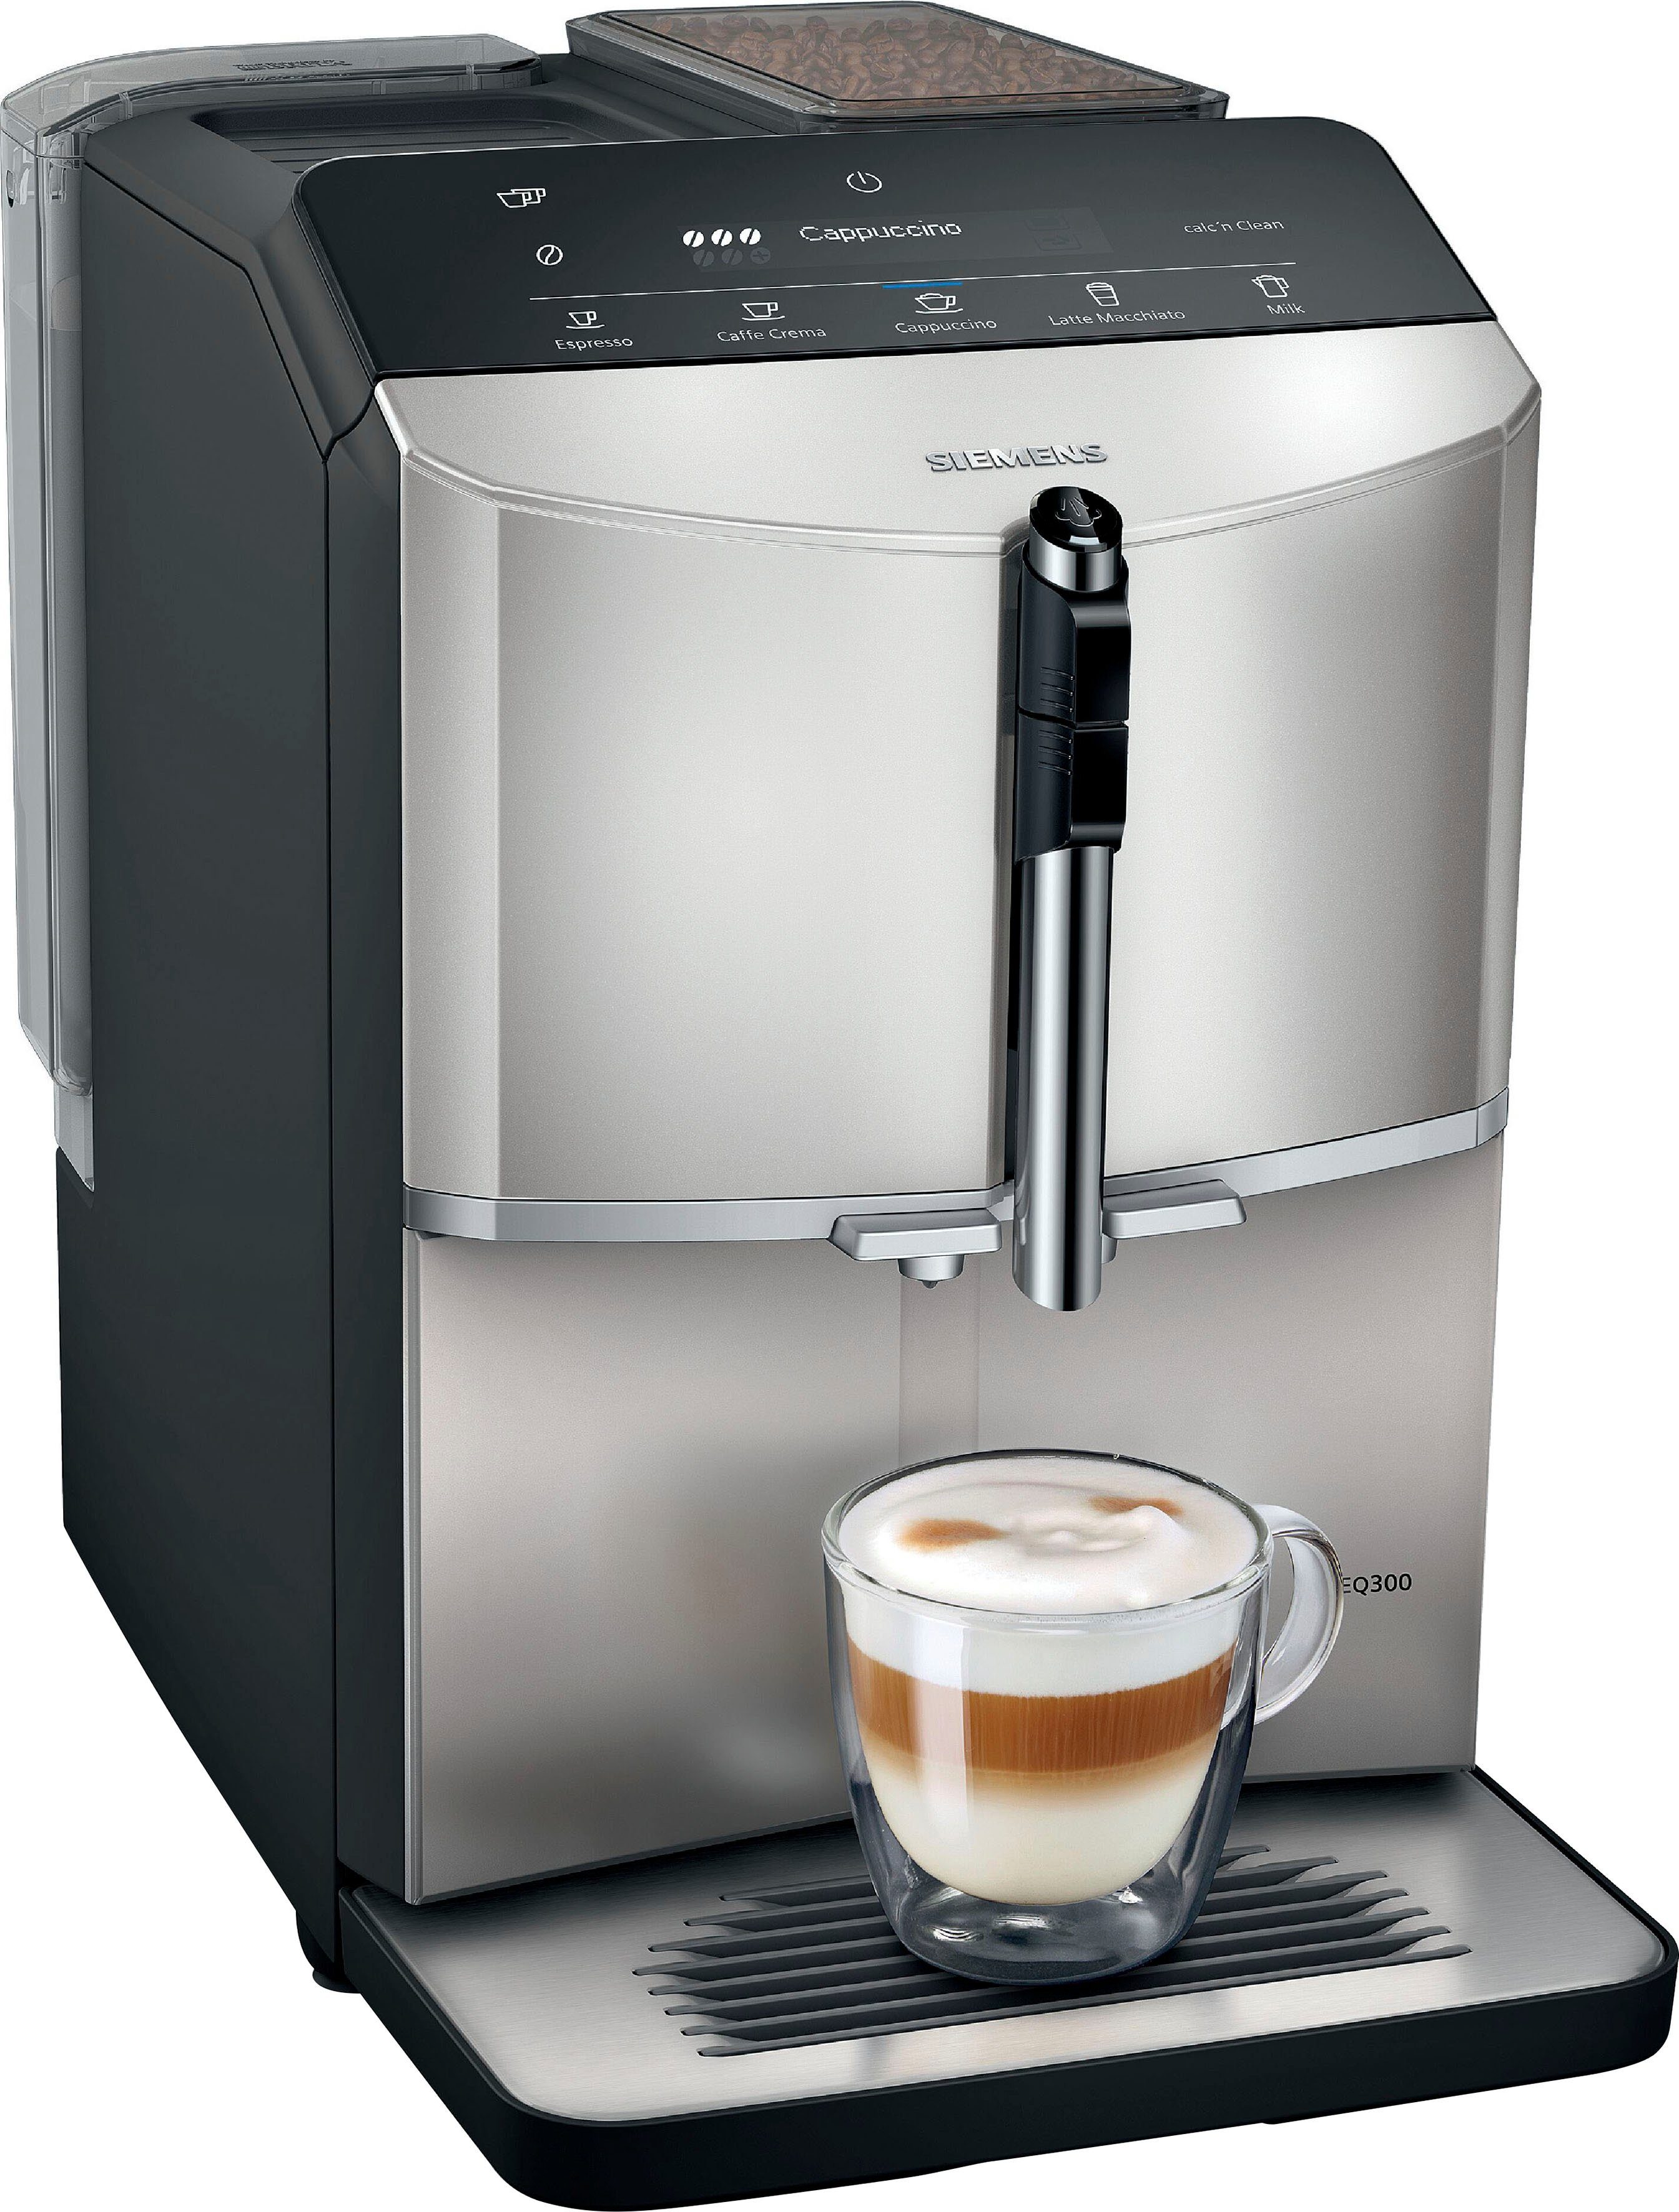 SIEMENS Kaffeevollautomat EQ300 TF303E07, viele Kaffeespezialitäten, OneTouch-Funktion, benutzerfreundliches Display, Keramikmahlwerk, silber metallic